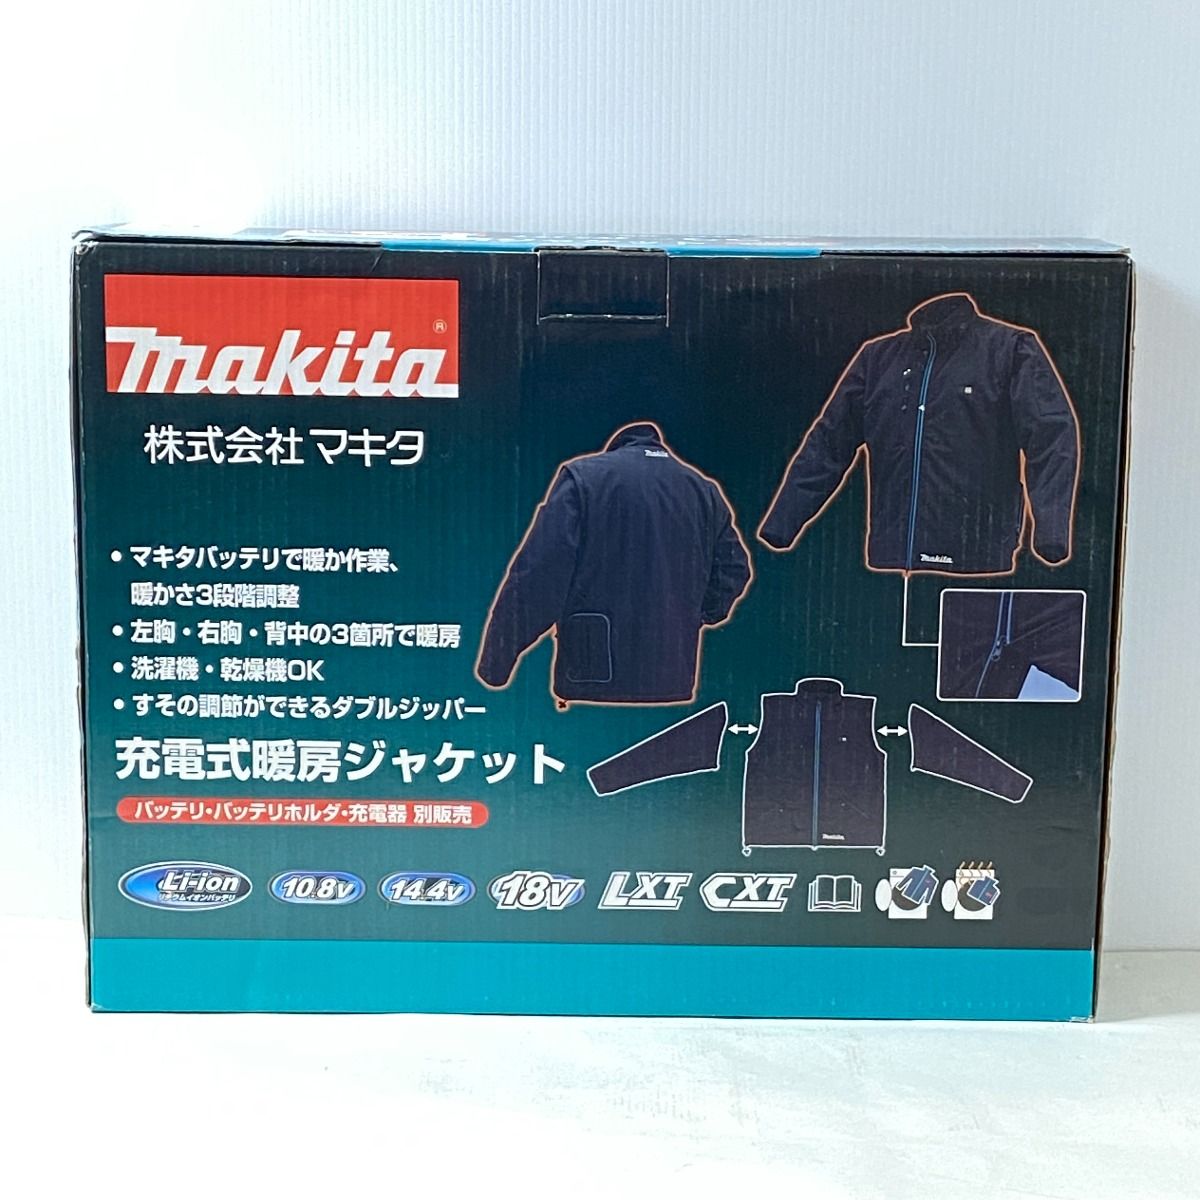 マキタ 充電式暖房ジャケット 新品未使用 - おもちゃ